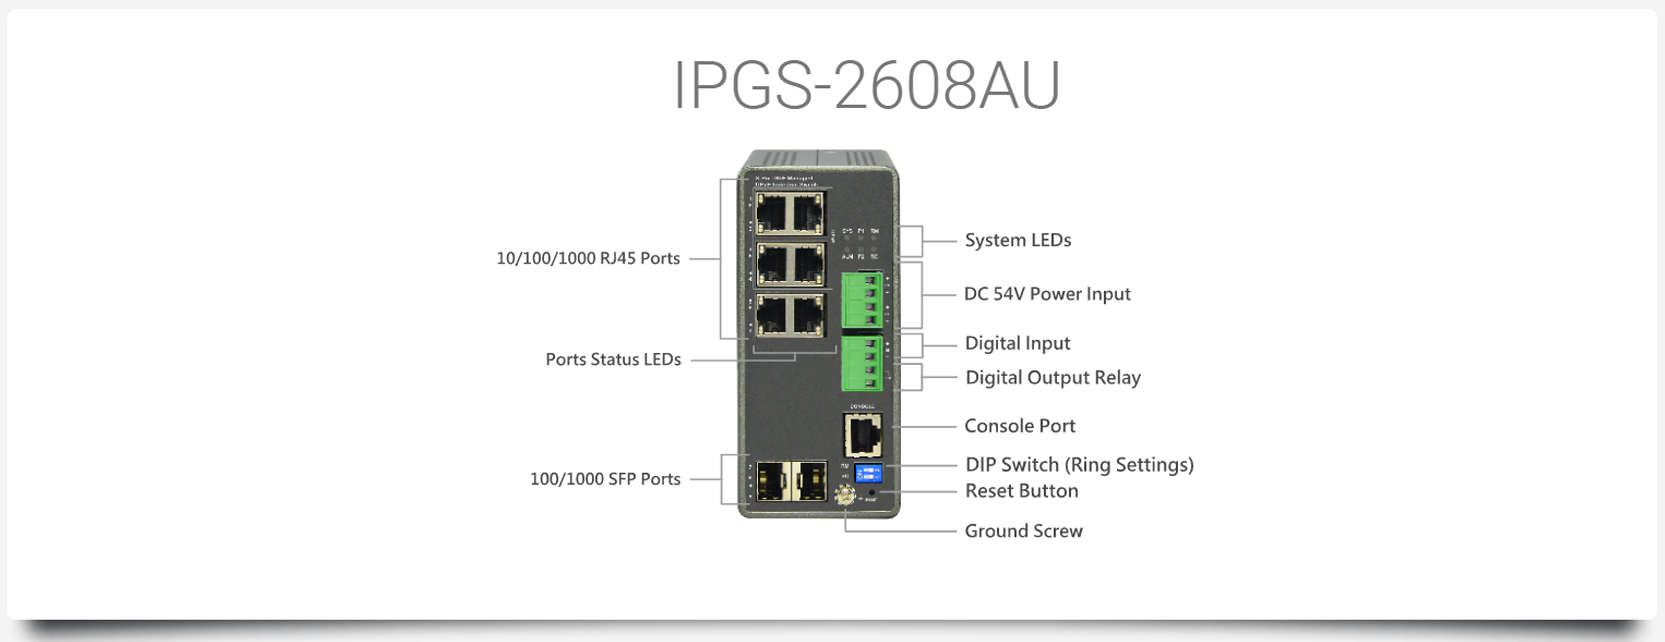 IPGS-2608AU